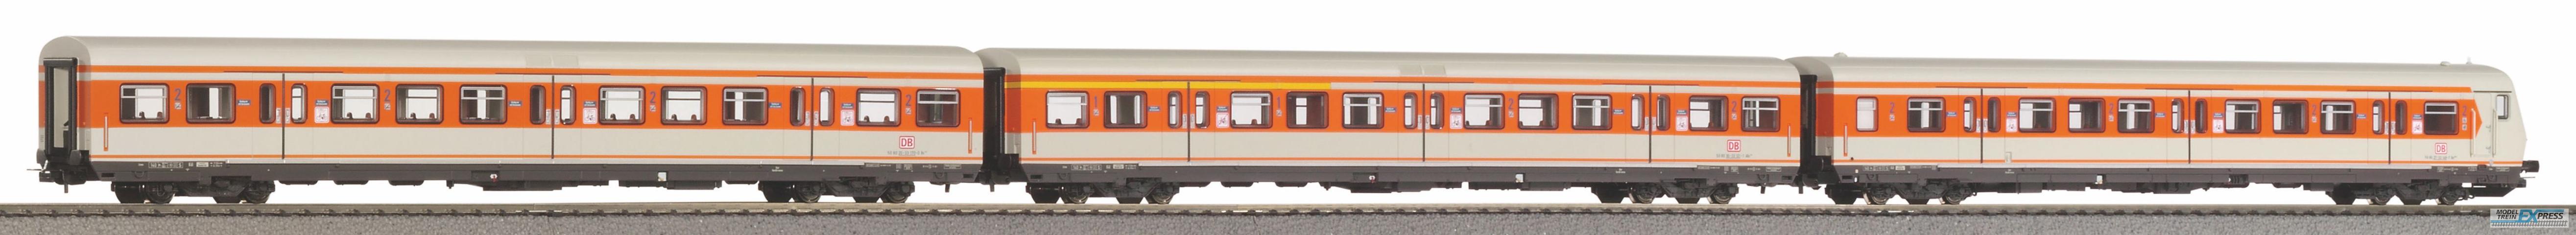 Piko 58226 3er Set S-Bahn Wagen orange-grau DB AG V